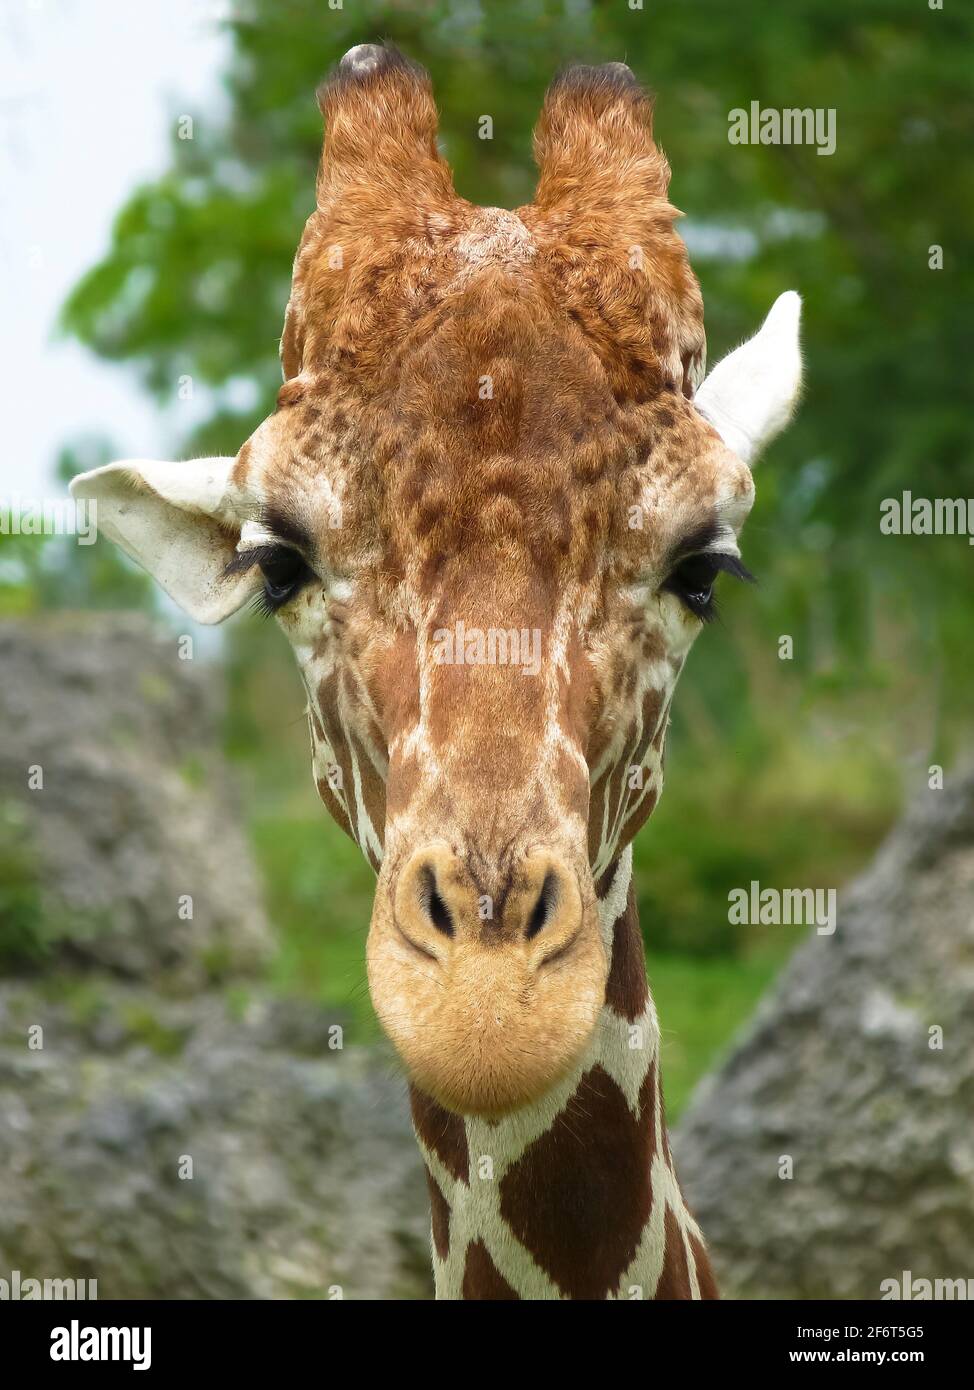 Die Giraffe ist ein afrikanisches, gleichmäßiges Huftier-Säugetier, das höchste lebende Landtier und das größte Wiederkäuer. Es wird traditionell betrachtet Stockfoto